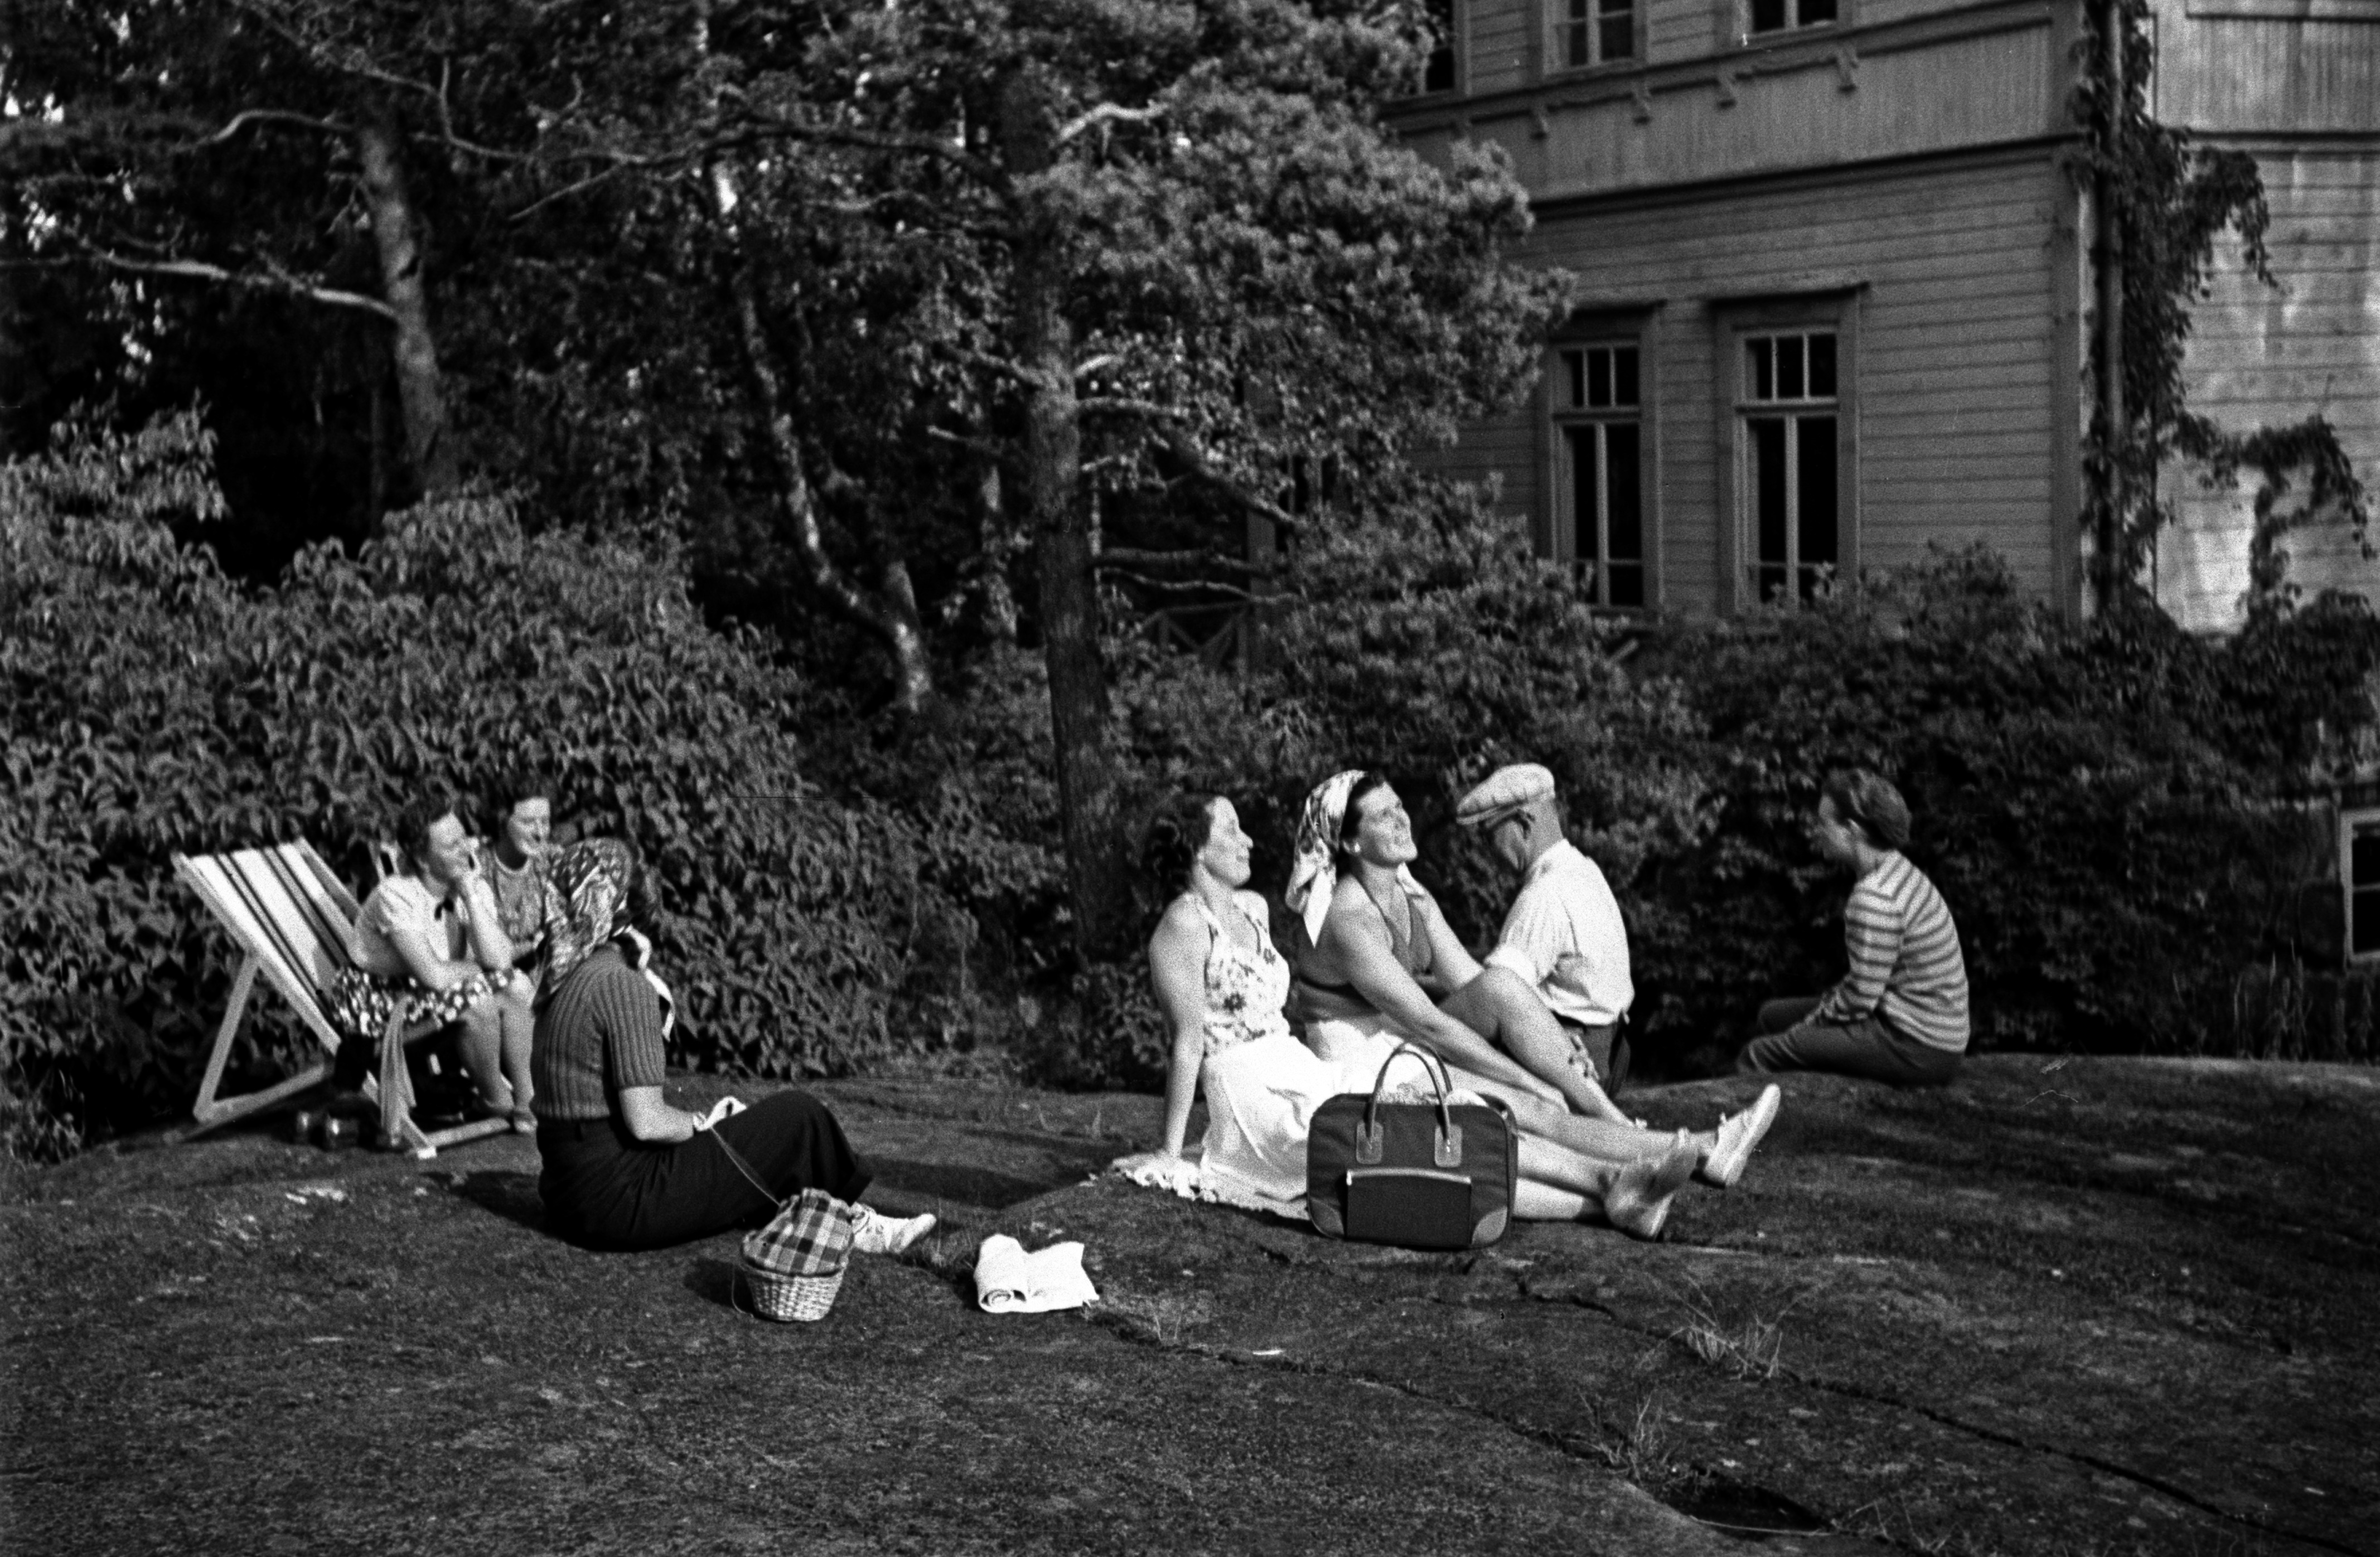 Joukko ihmisiä istumassa ulkona kallioilla ja aurinkotuoleissa Pihlajasaaressa. Oikealla näkyy nk. "Elannon huvila", Wästanhäll.